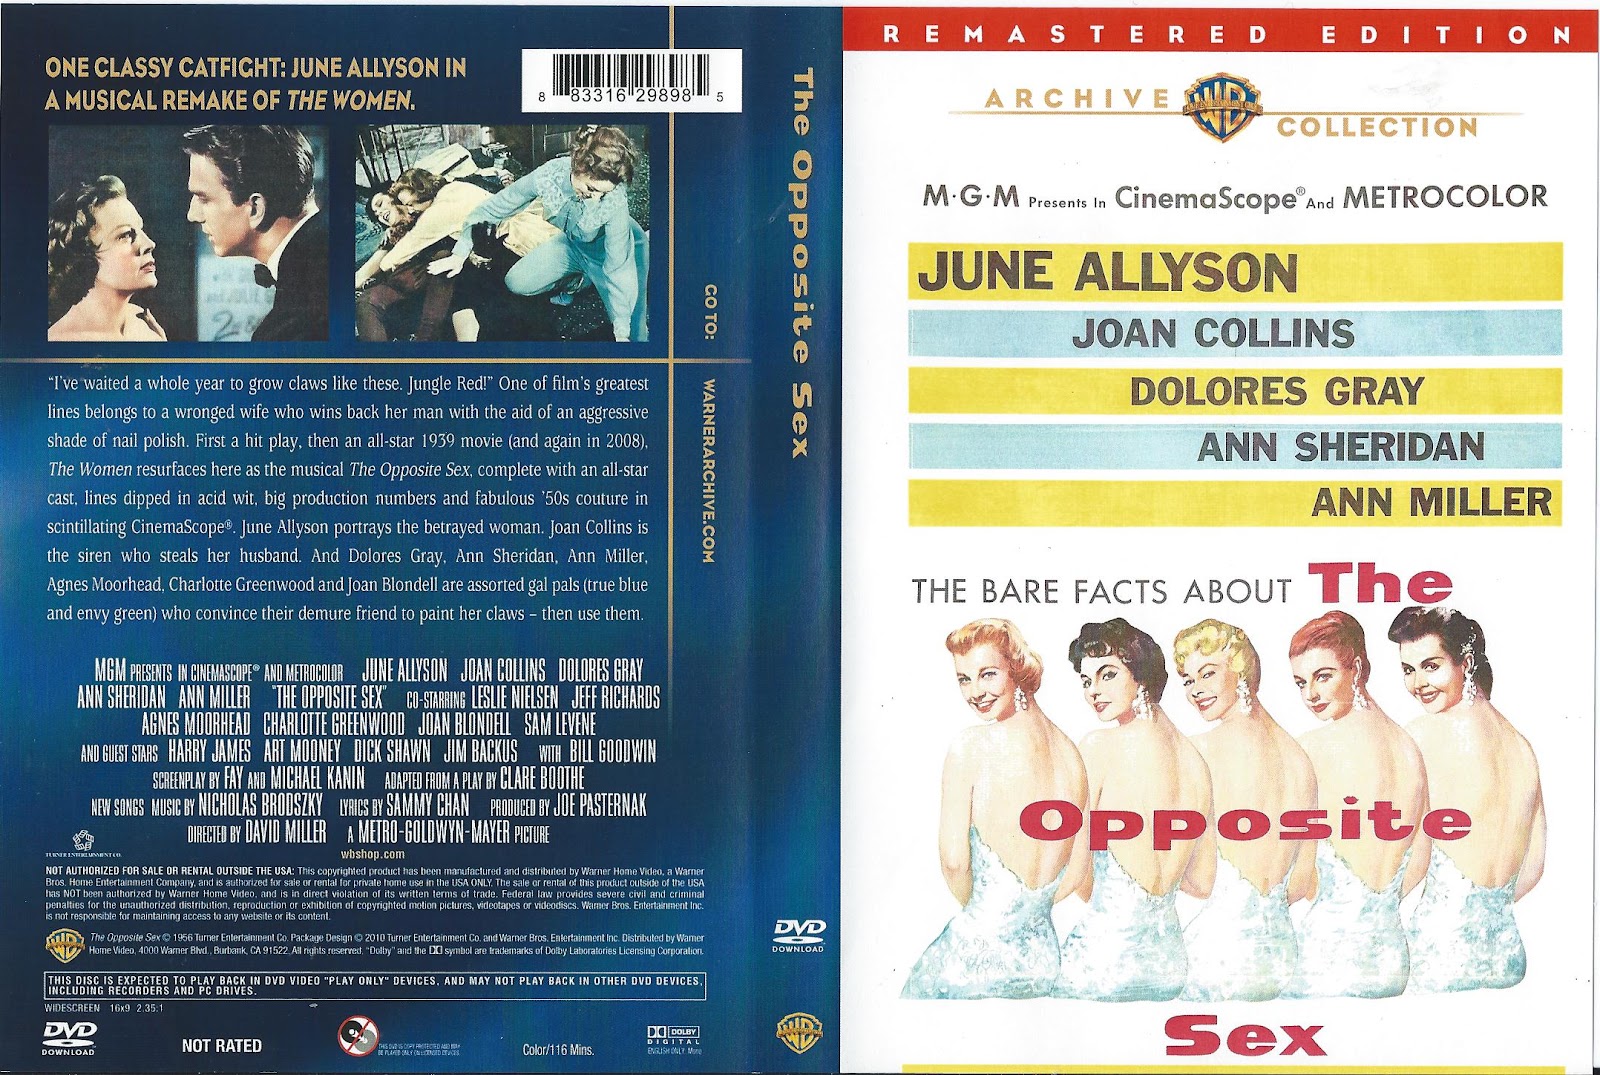 Opposite Sex Dvd 40